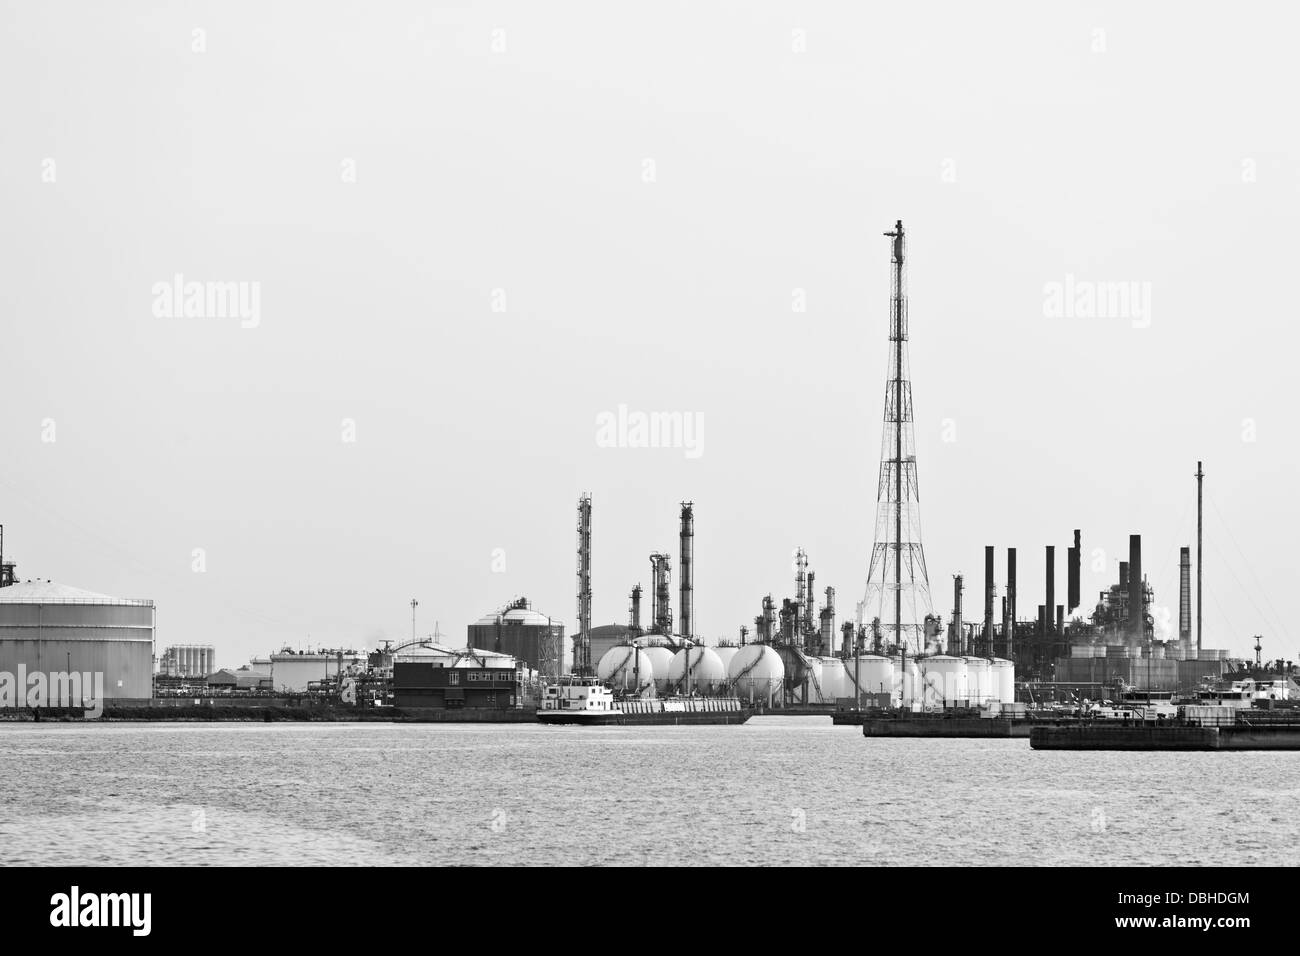 Tours de distillation et les réservoirs de stockage de pétrole dans une raffinerie en journée, tourné en noir et blanc. Banque D'Images